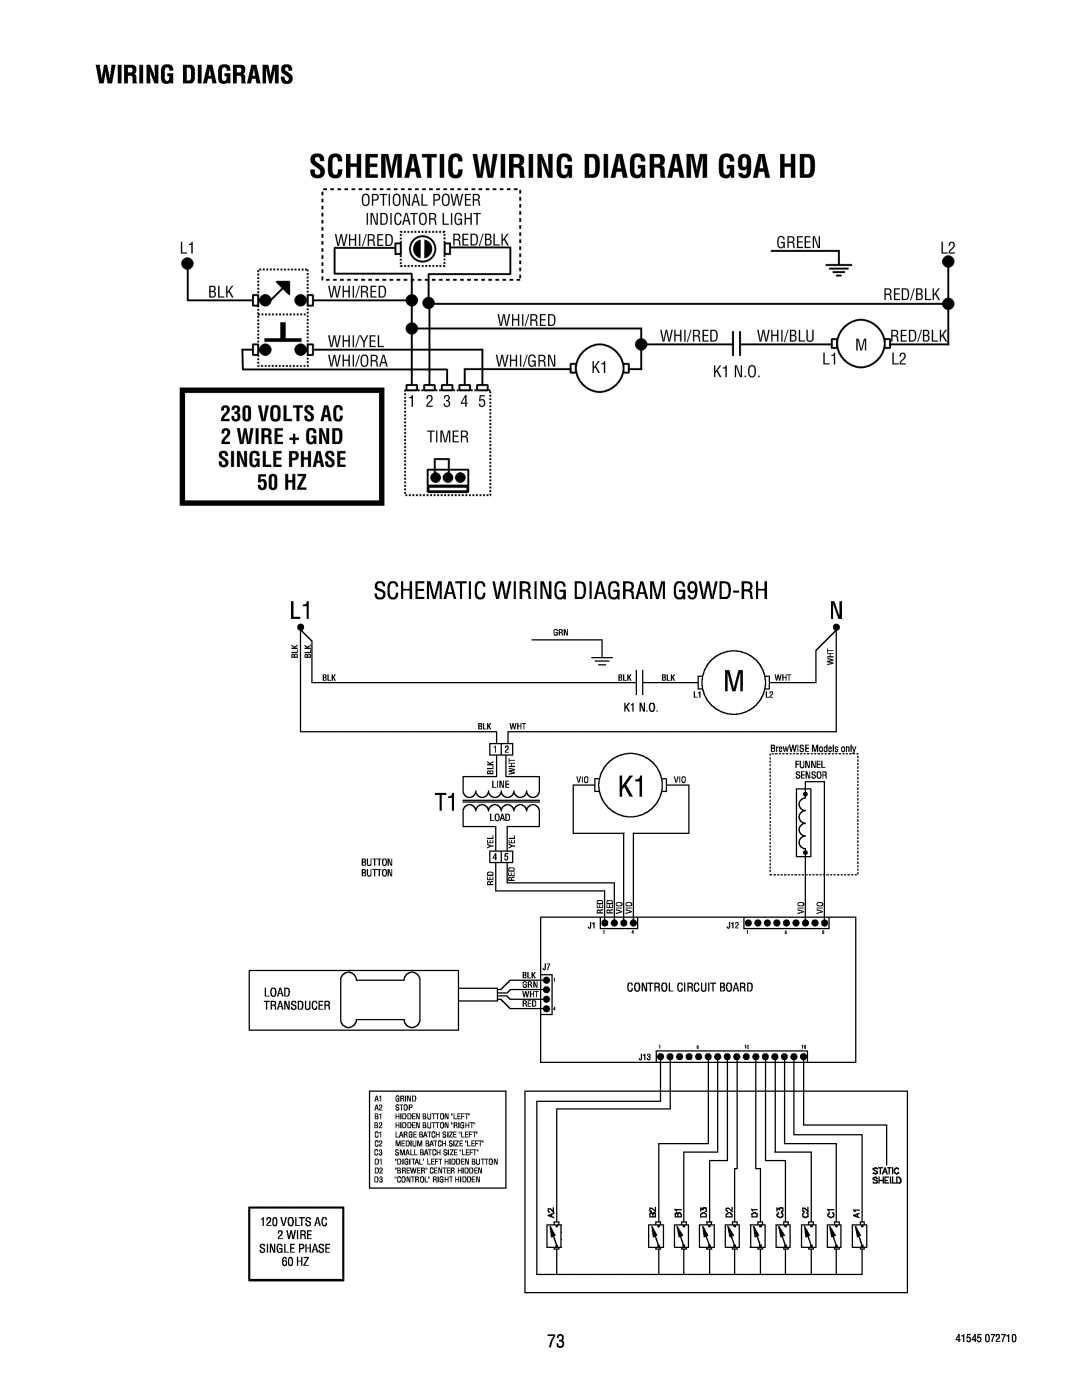 Bunn SCHEMATIC WIRING DIAGRAM G9A HD, 50 HZ, Wiring Diagrams, SCHEMATIC WIRING DIAGRAM G9WD-RH, Volts Ac, Wire + Gnd 